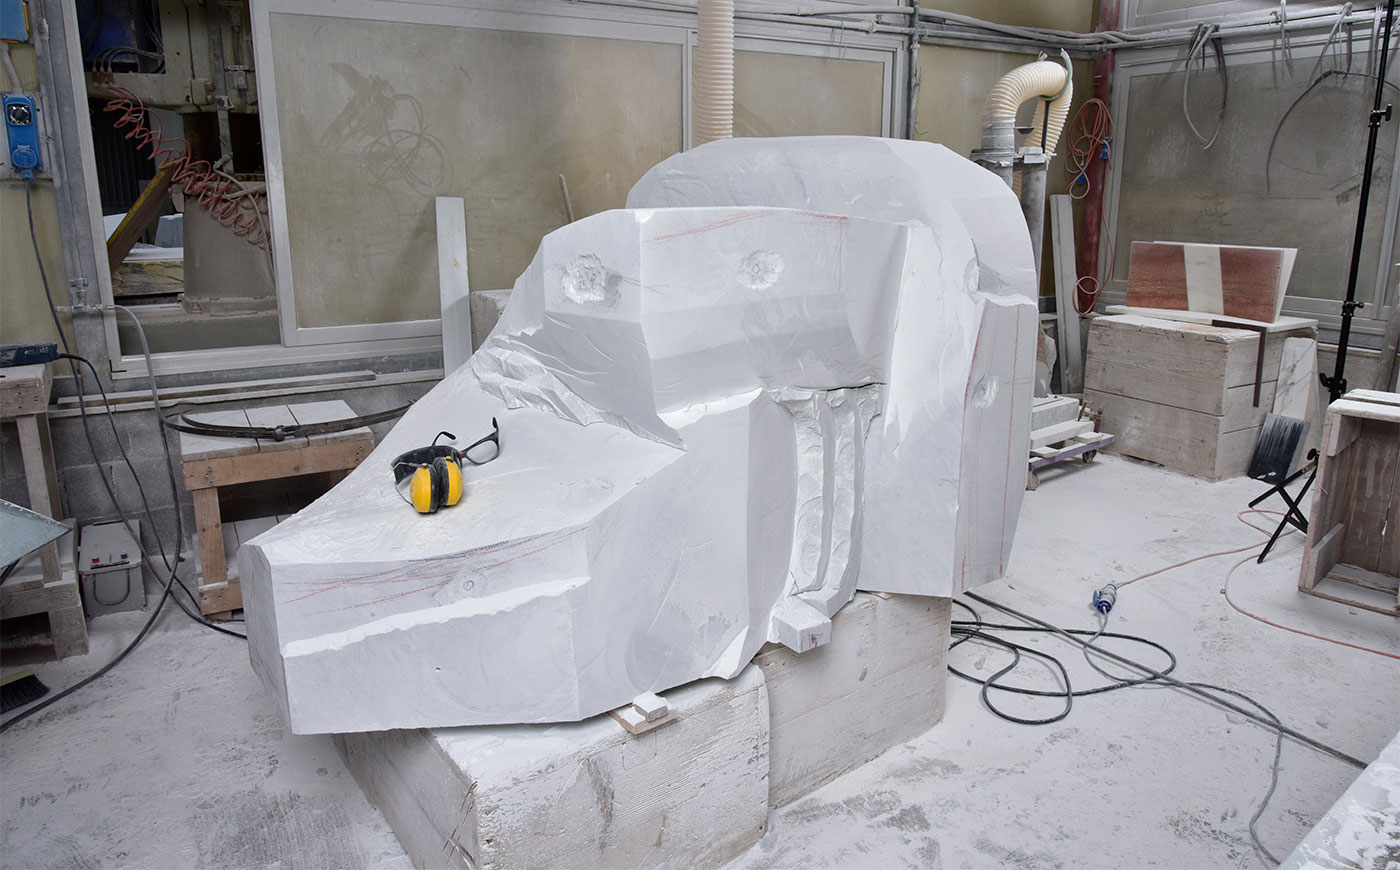 Richard Erdman modern sculpture marble studio process